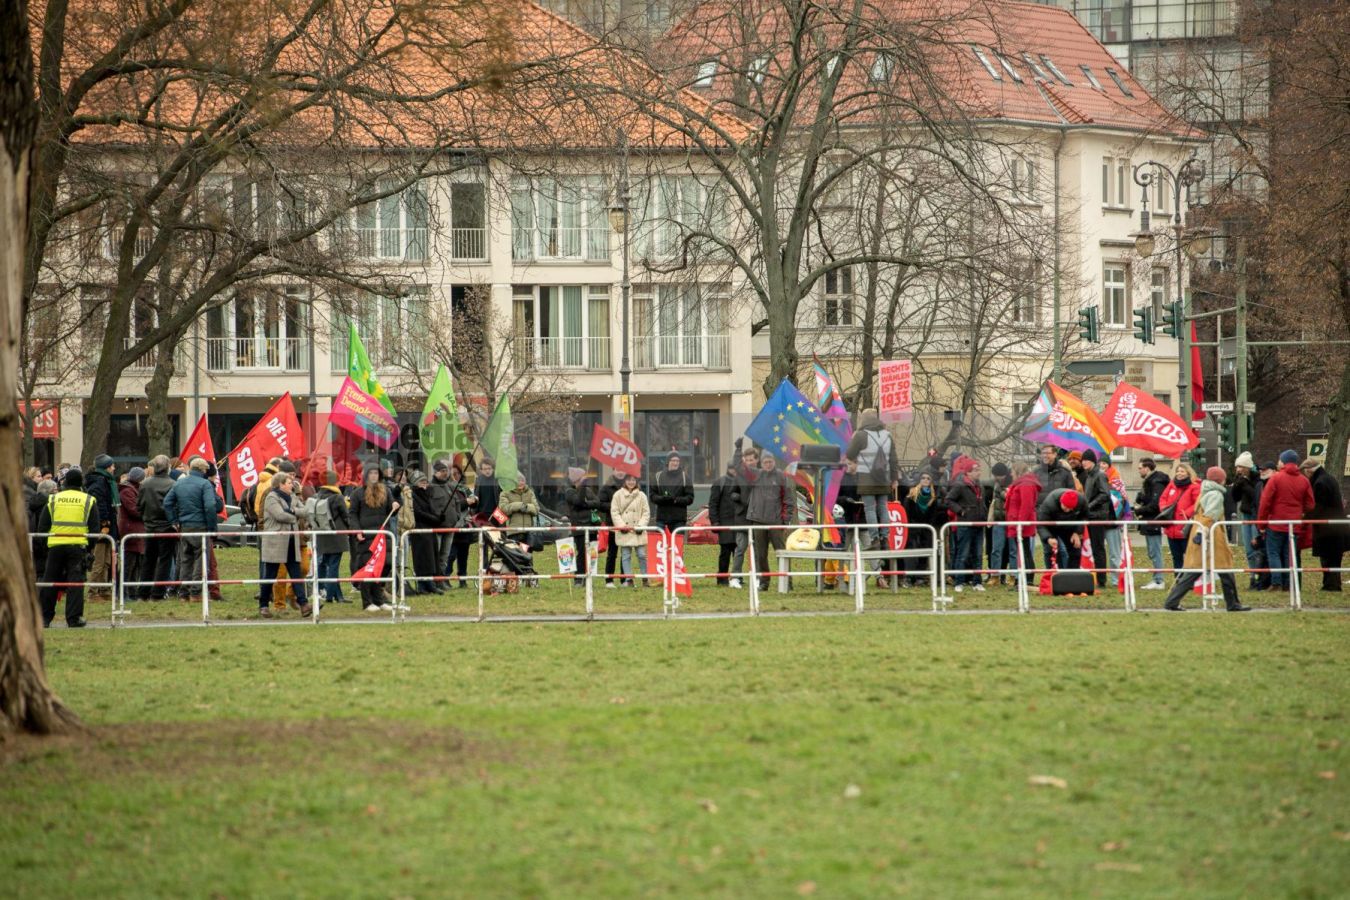 Proteste gegen AfD-Kundgebung in Charlottenburg <i>Bild Christian Schneider/R-mediabase</i> <br><a href=/confor2/?bld=72294&pst=72228&aid=615&dc=1106&i1=Christian%20Schneider/R-mediabase>Anfrage Download Bild 72294</a>  <a href=/wp-admin/post.php?post=72294&action=edit> / Edit</a><br><a href=/?p=72228>Zum Beitrag 72228</a>